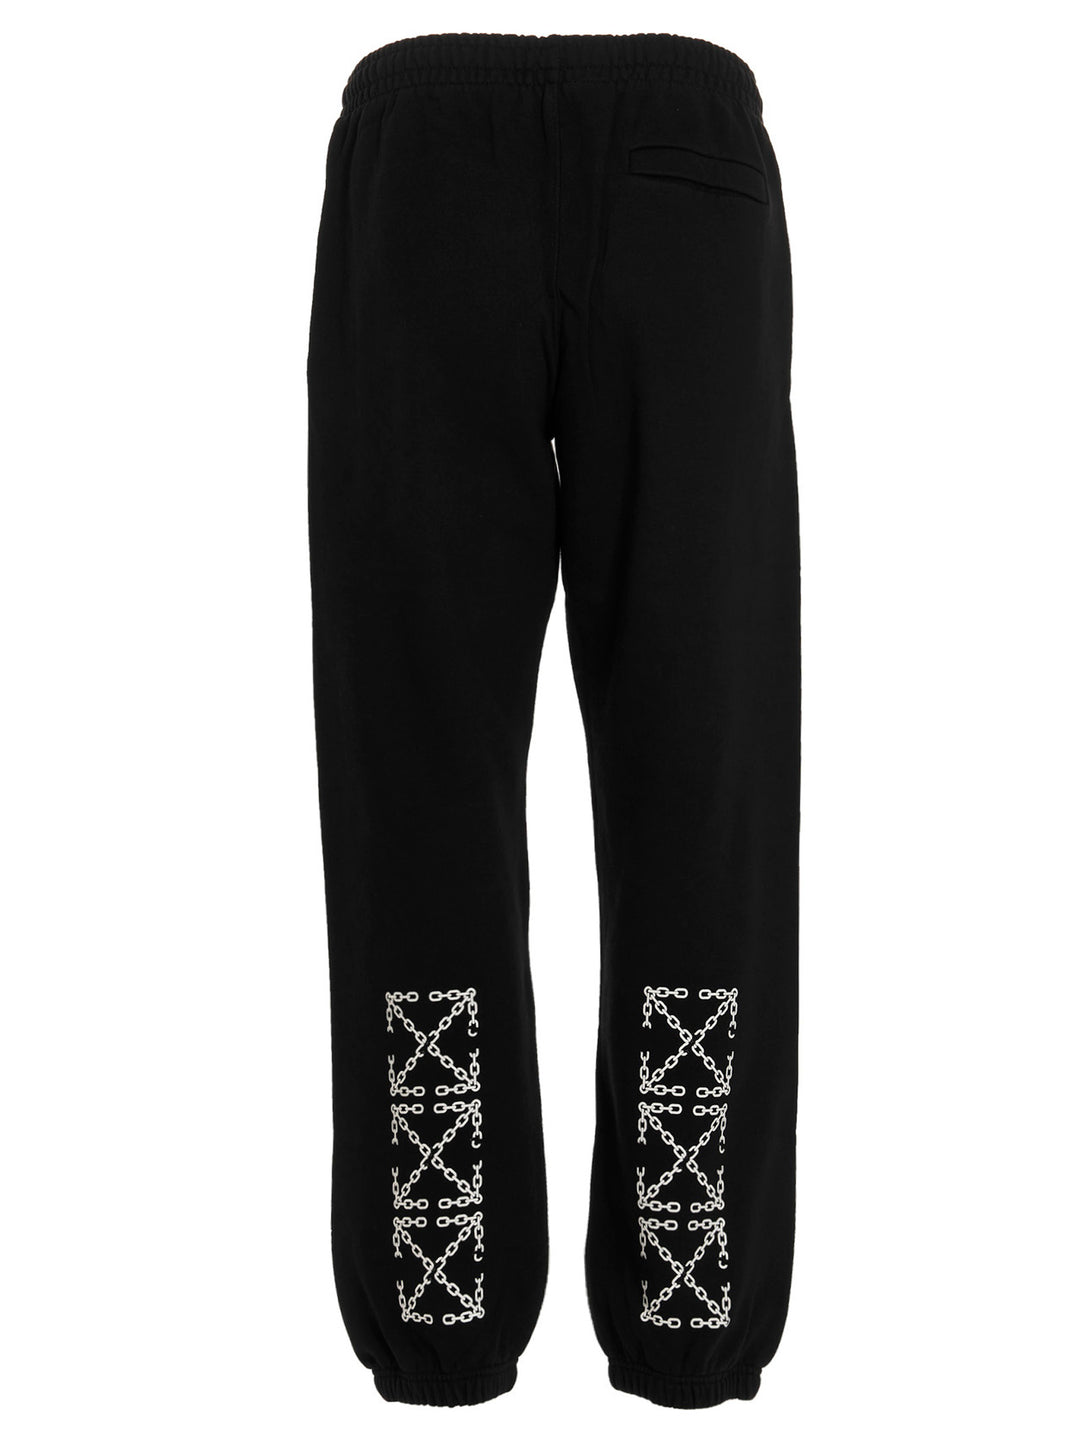 'Chain Arrow' Pantaloni Bianco/nero